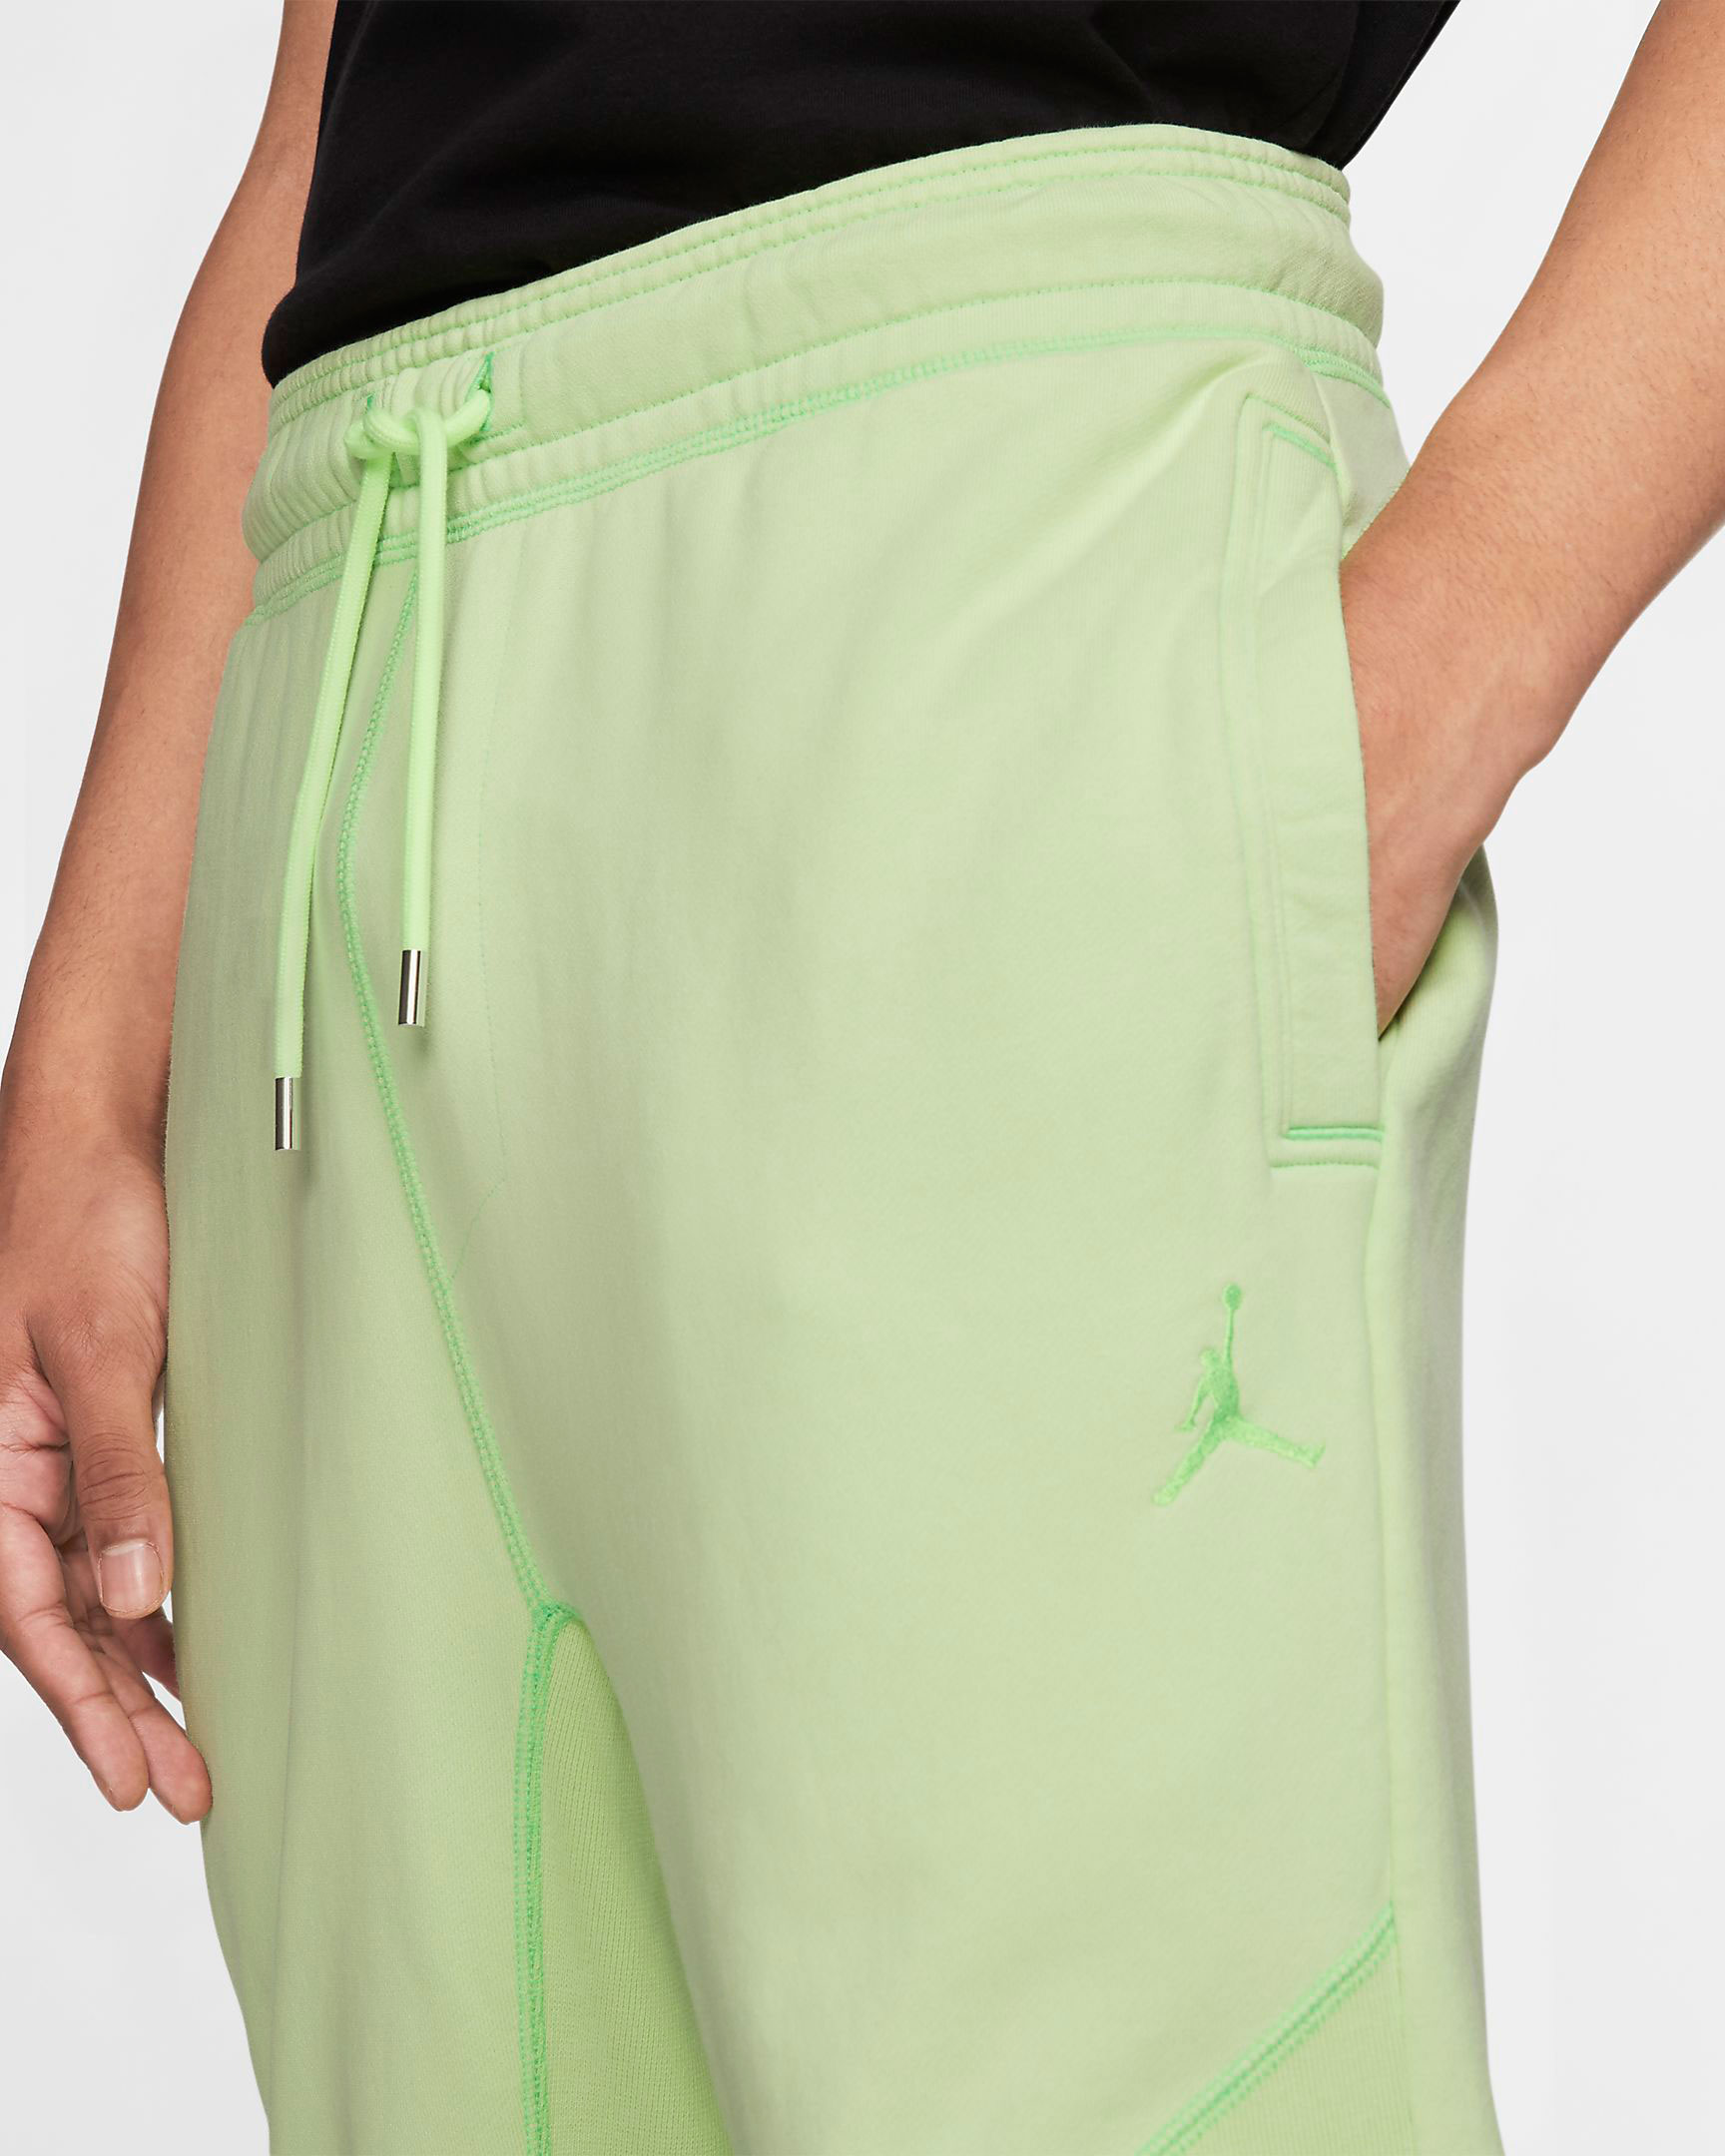 jordan-5-ghost-green-alternate-bel-air-jogger-pants